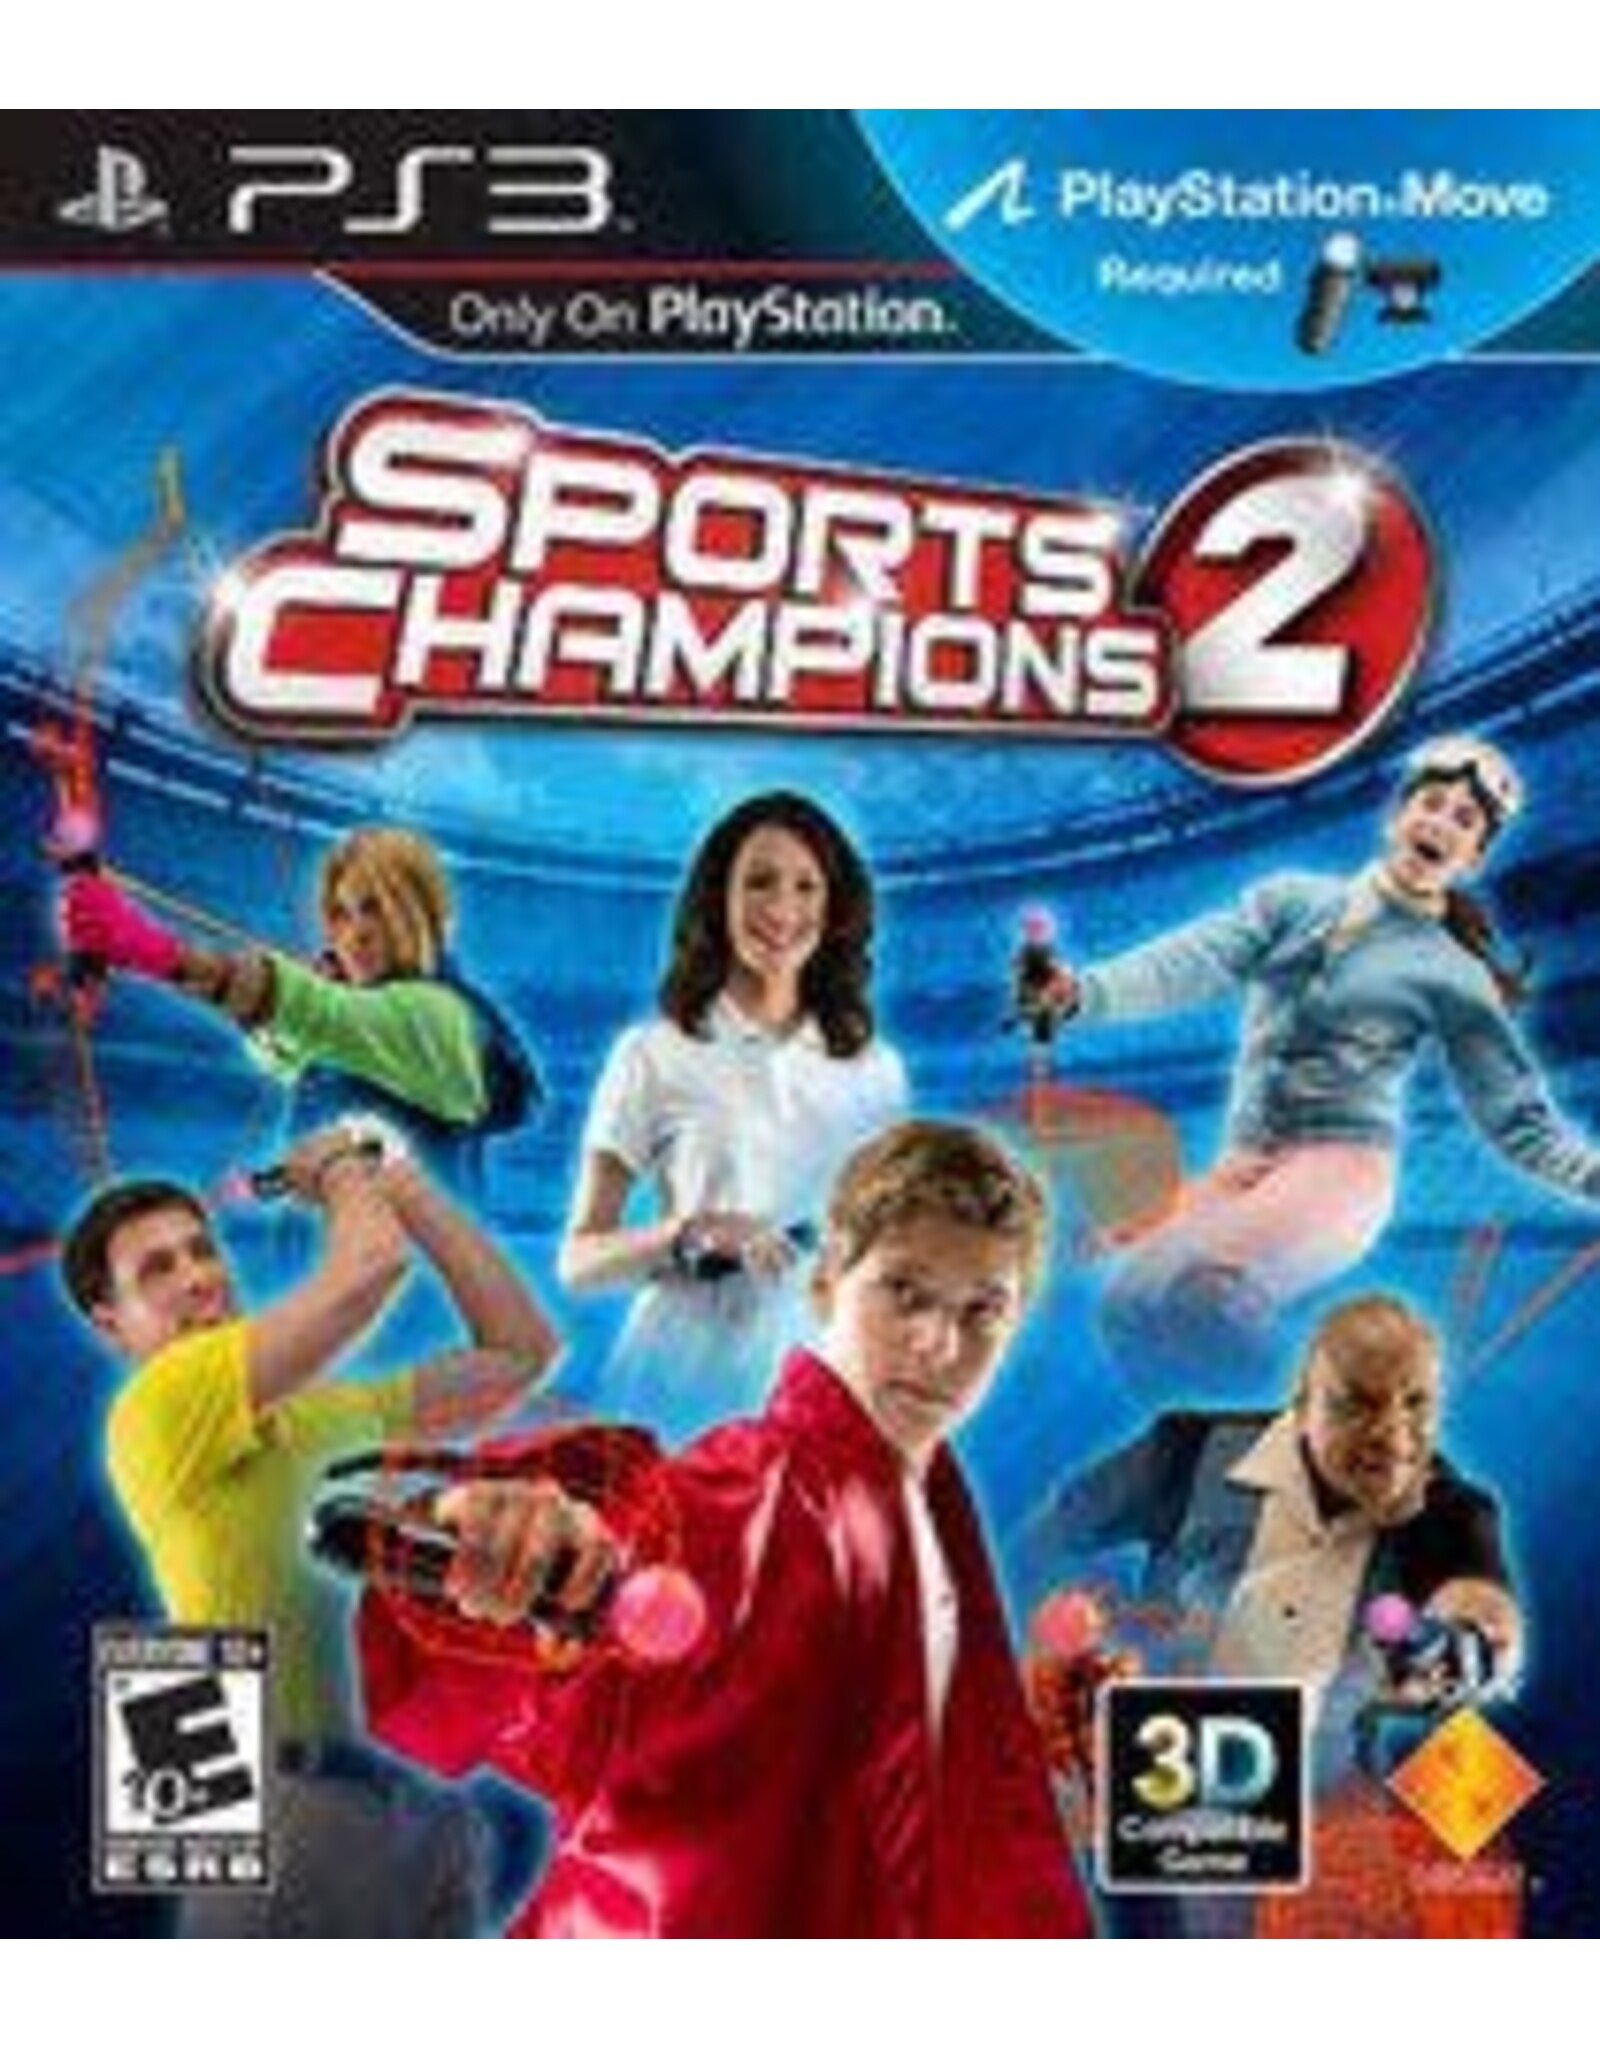 Playstation 3 Sports Champions 2 (No Manual)